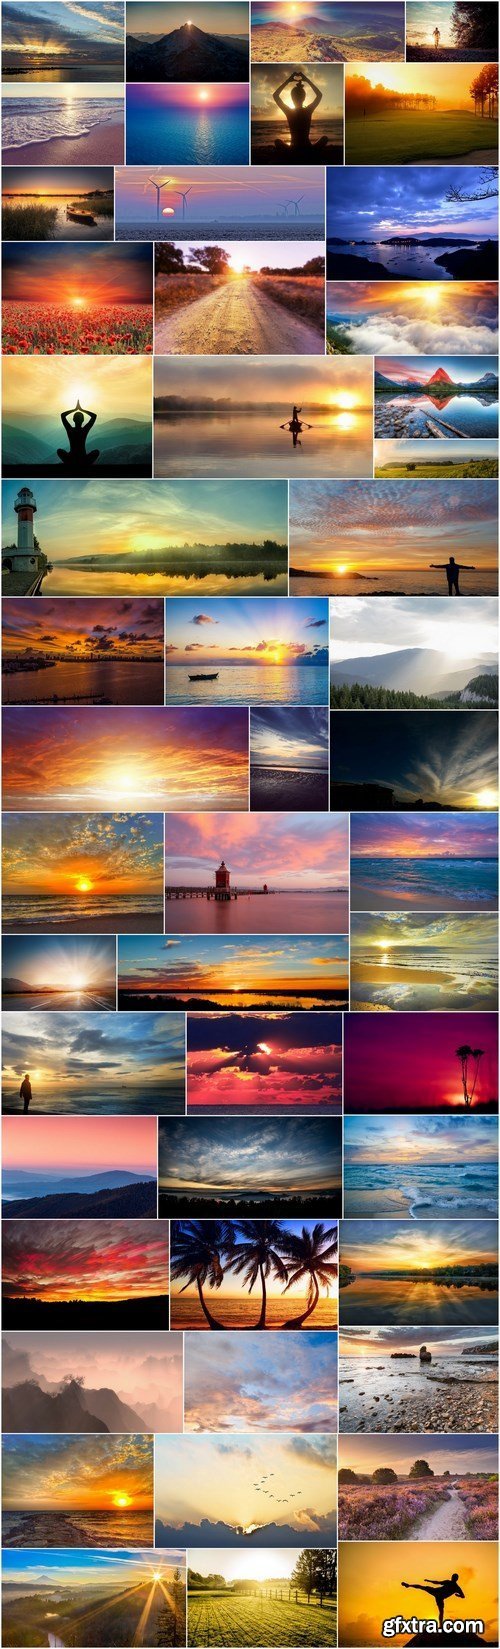 Beautiful sunsets and sunrises - 50xUHQ JPEG